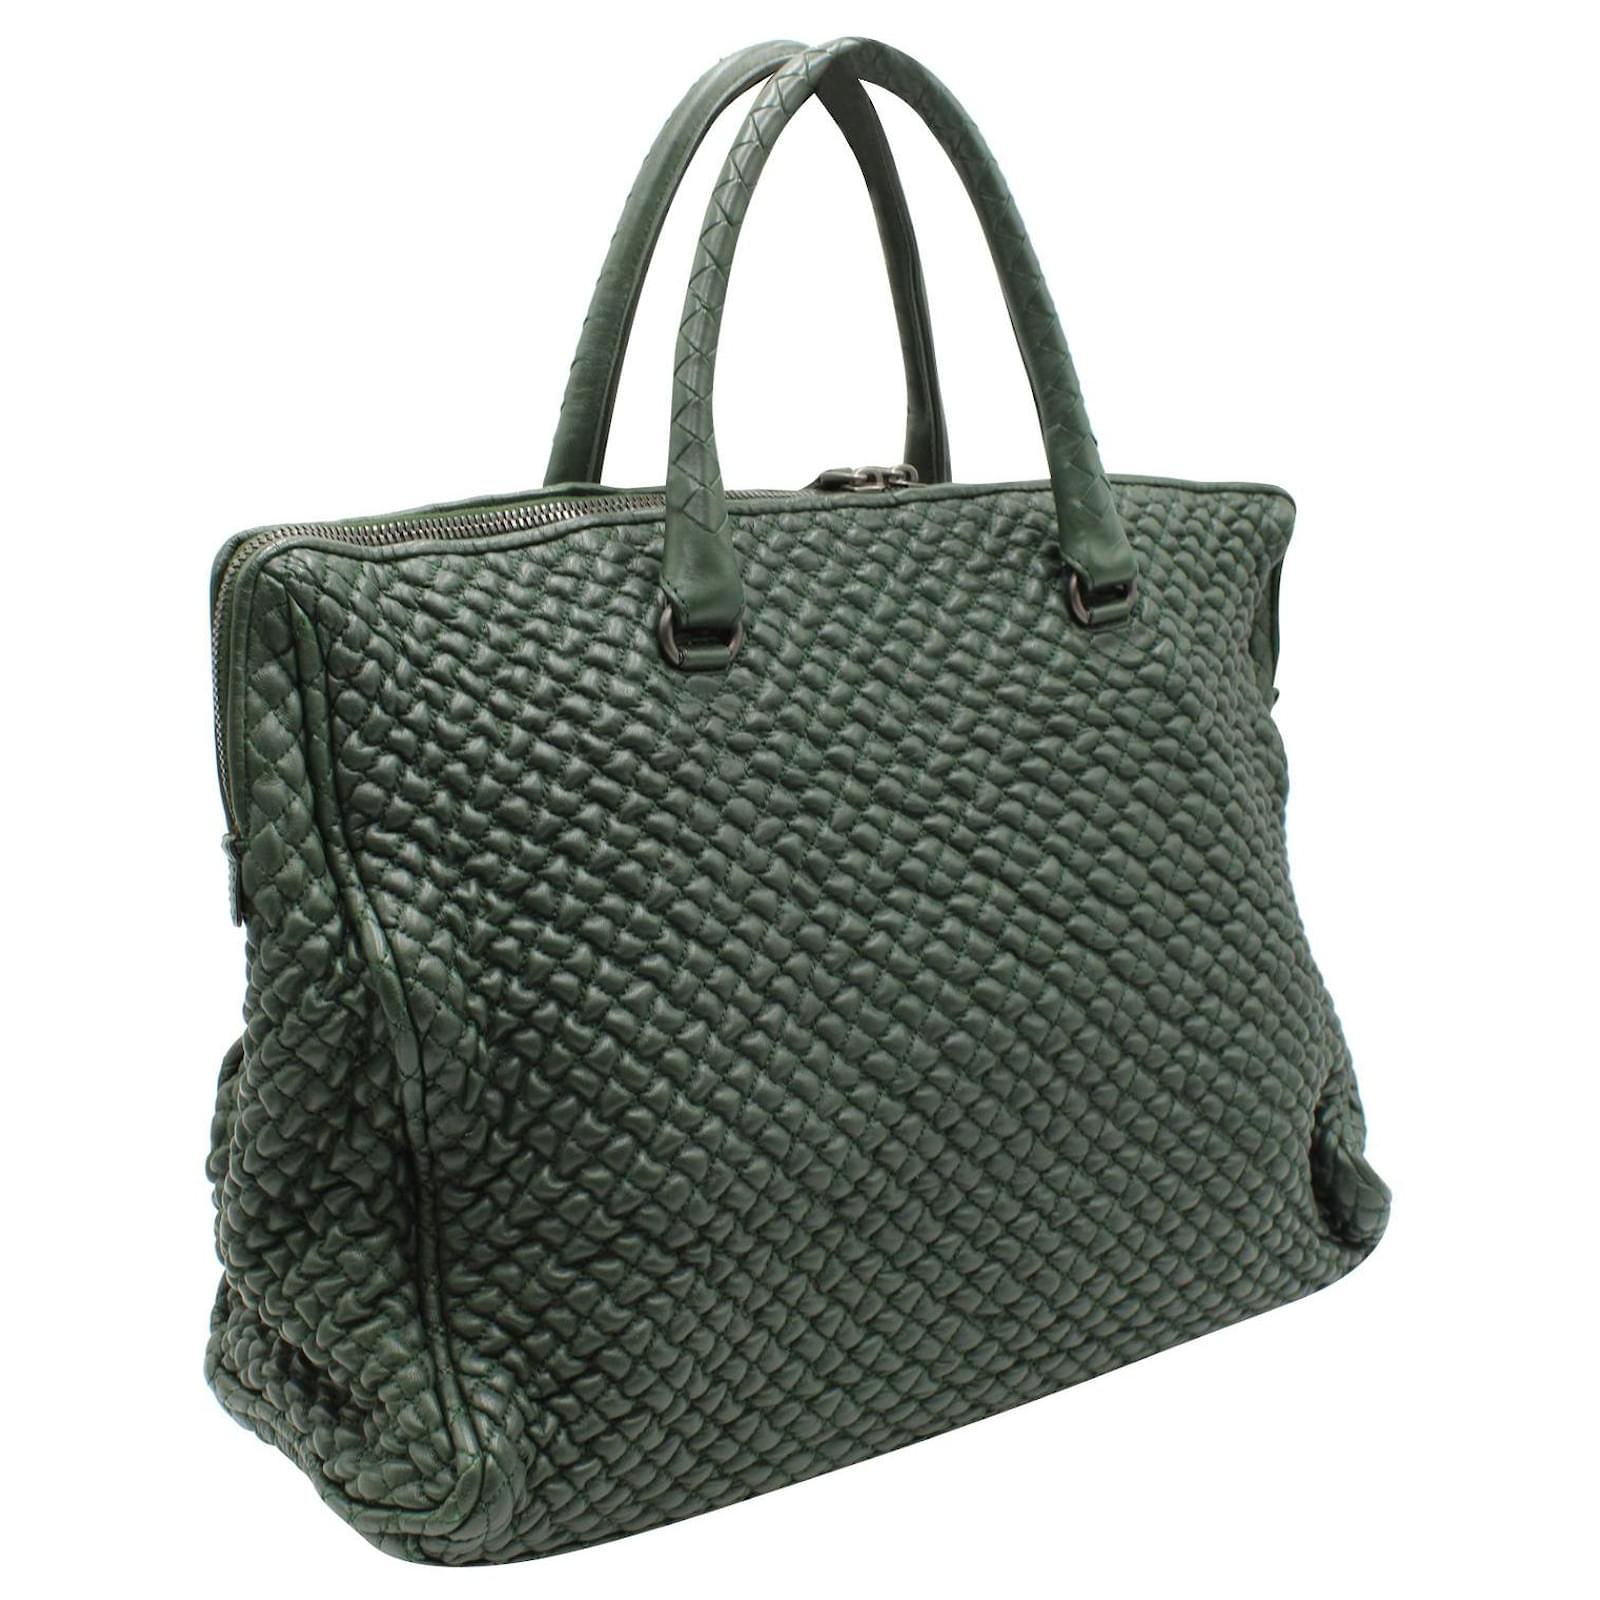 BOTTEGA VENETA Intrecciato Woven Nappa Leather Convertible Tote Bag